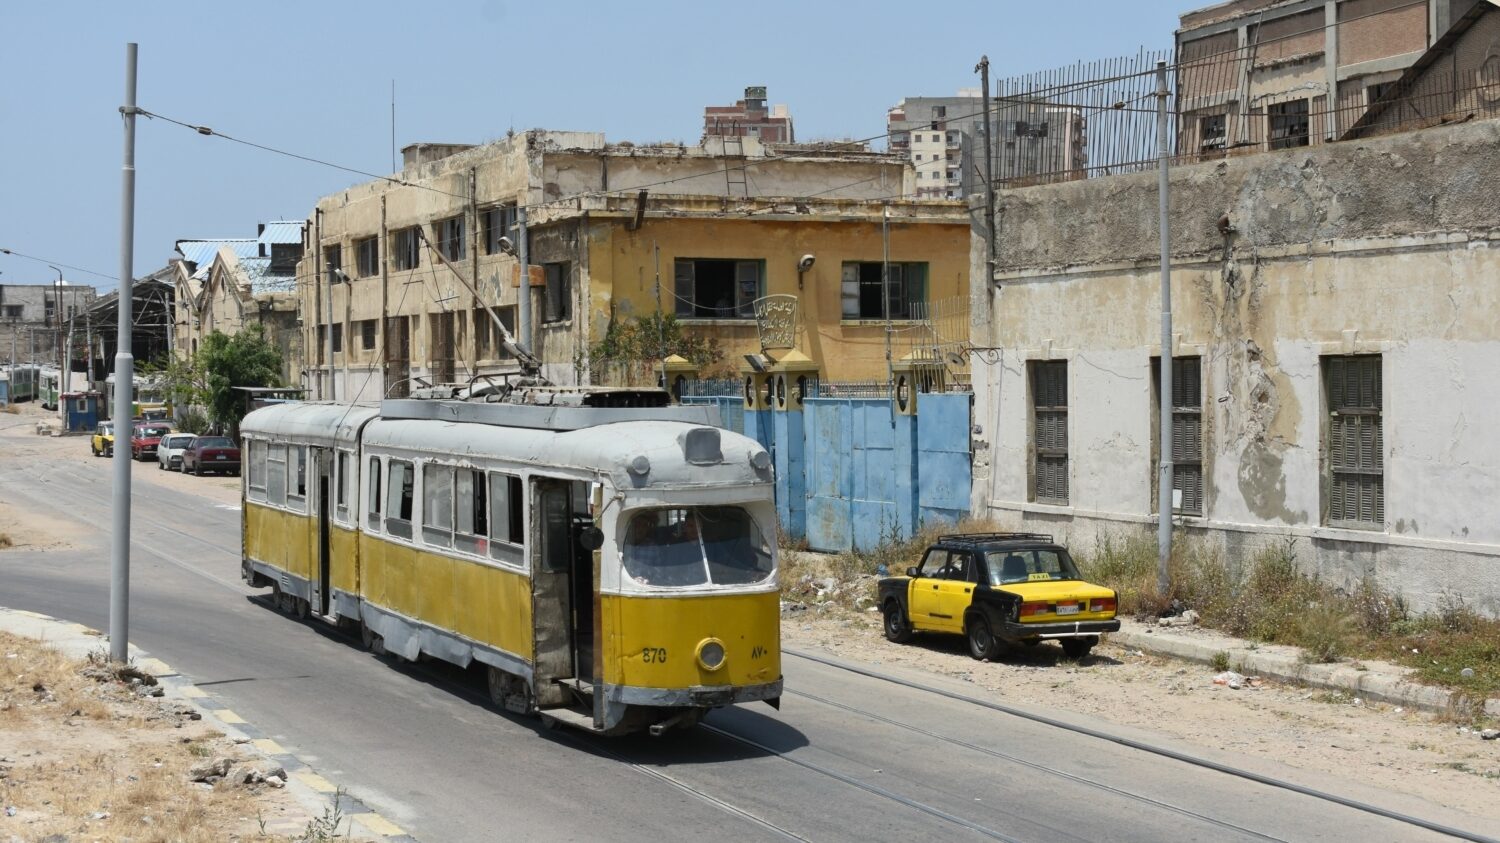 Původní kodaňské tramvaje Düwag jsou stále v provozu v egyptské Alexandrii. Nedaleko místní vozovny byl zachycen jeden z vozů ve společnosti místního nejtypičtějšího představitele taxíků. (foto: Libor Hinčica)